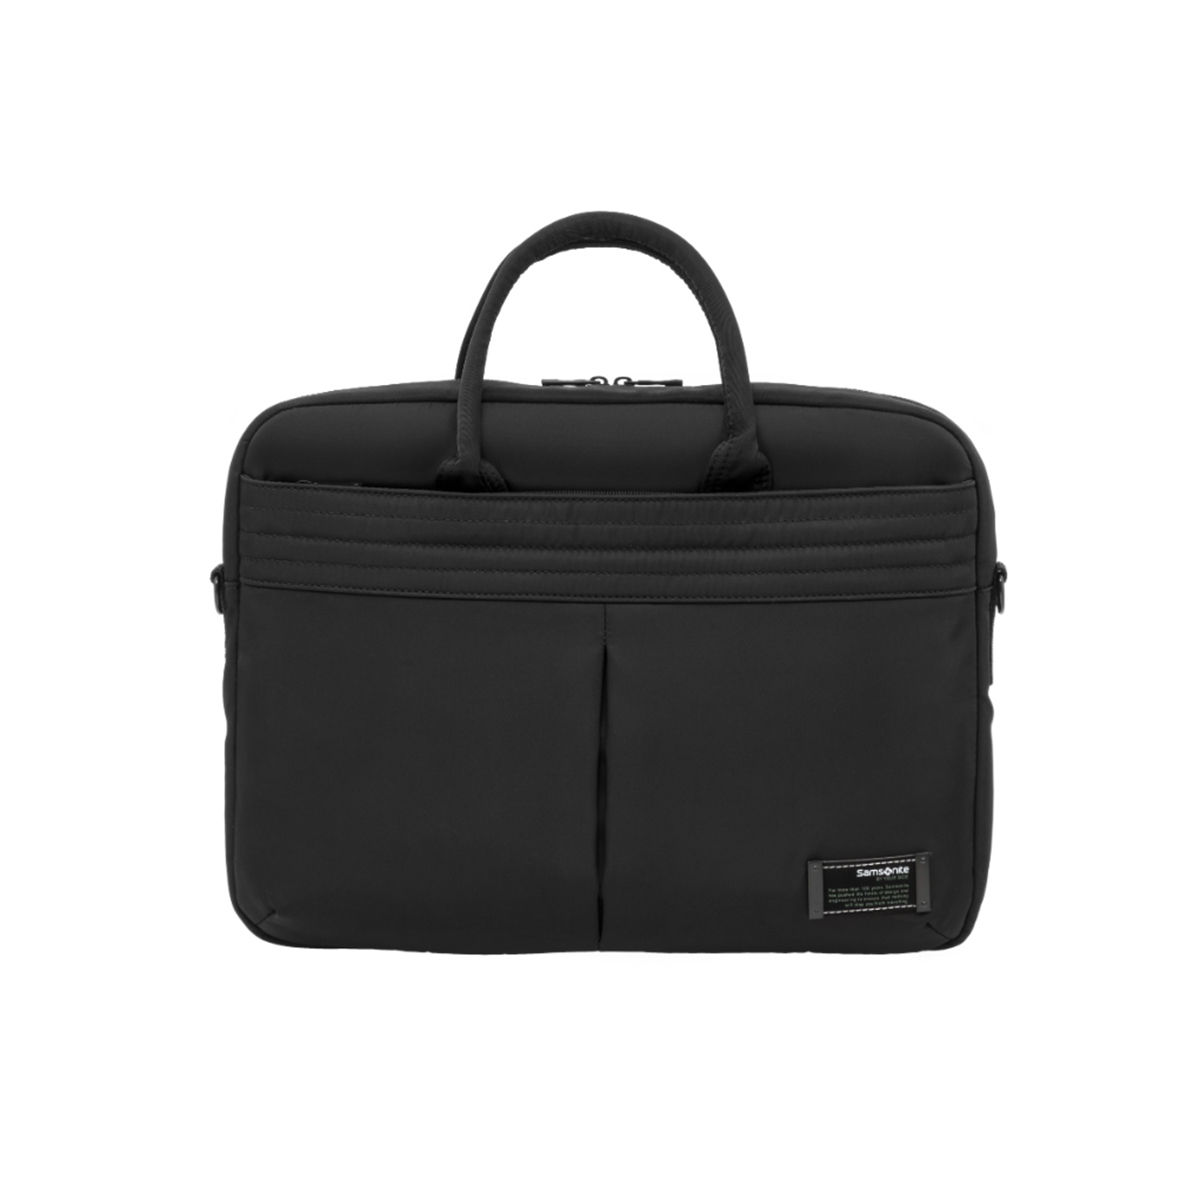 Buy Samsonite Laptop Bag For Men Women | Marvas One Side Bag ...